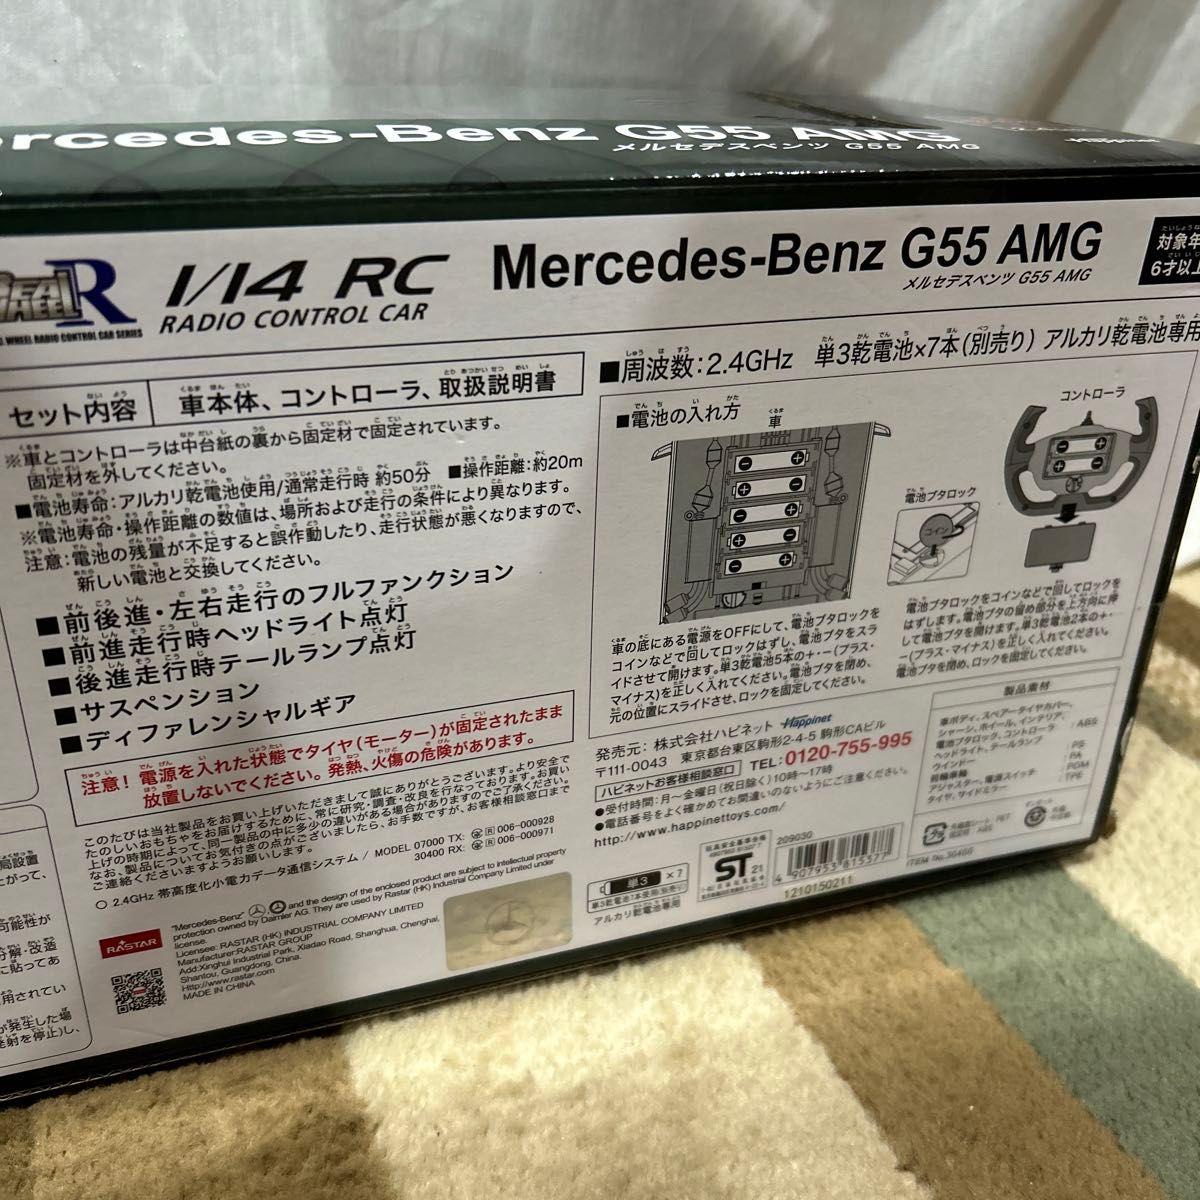 1/14 R/C Mercedes-Benz G55 AMG (メルセデスベンツG55AMG)